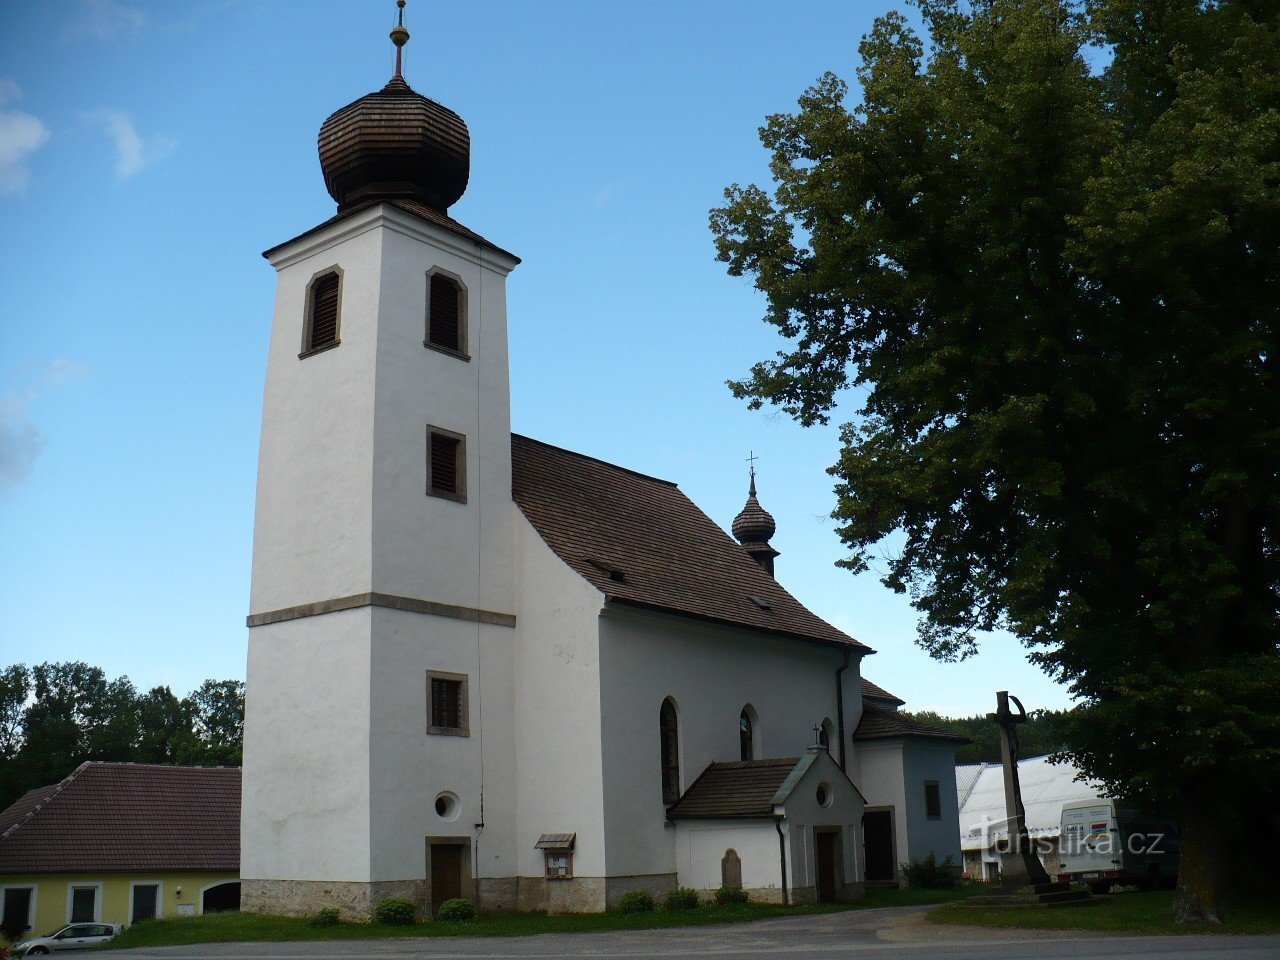 Церковь св. Вавржинец в Чески-Рудолеце